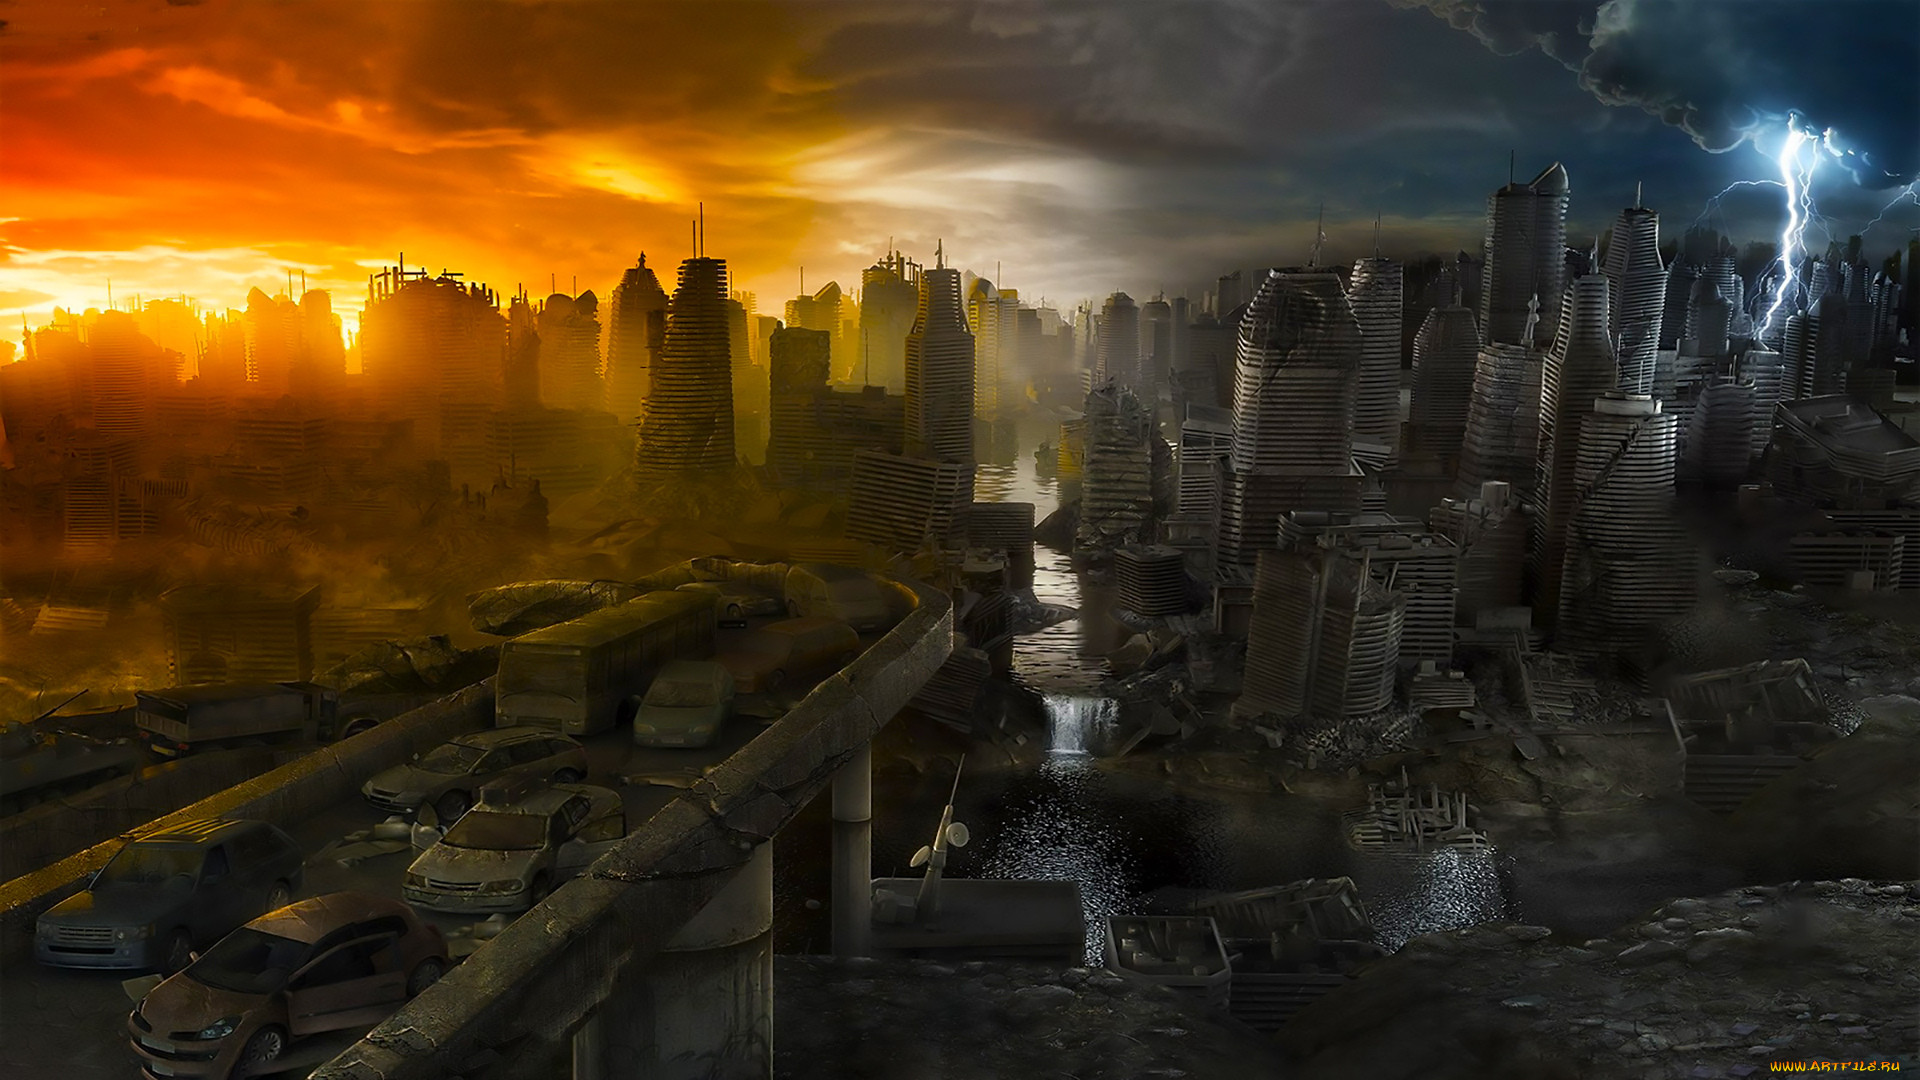 Разрушенные цивилизации. Разрушенный город. Город после апокалипсиса. Разрушенный город будущего. Конец света.